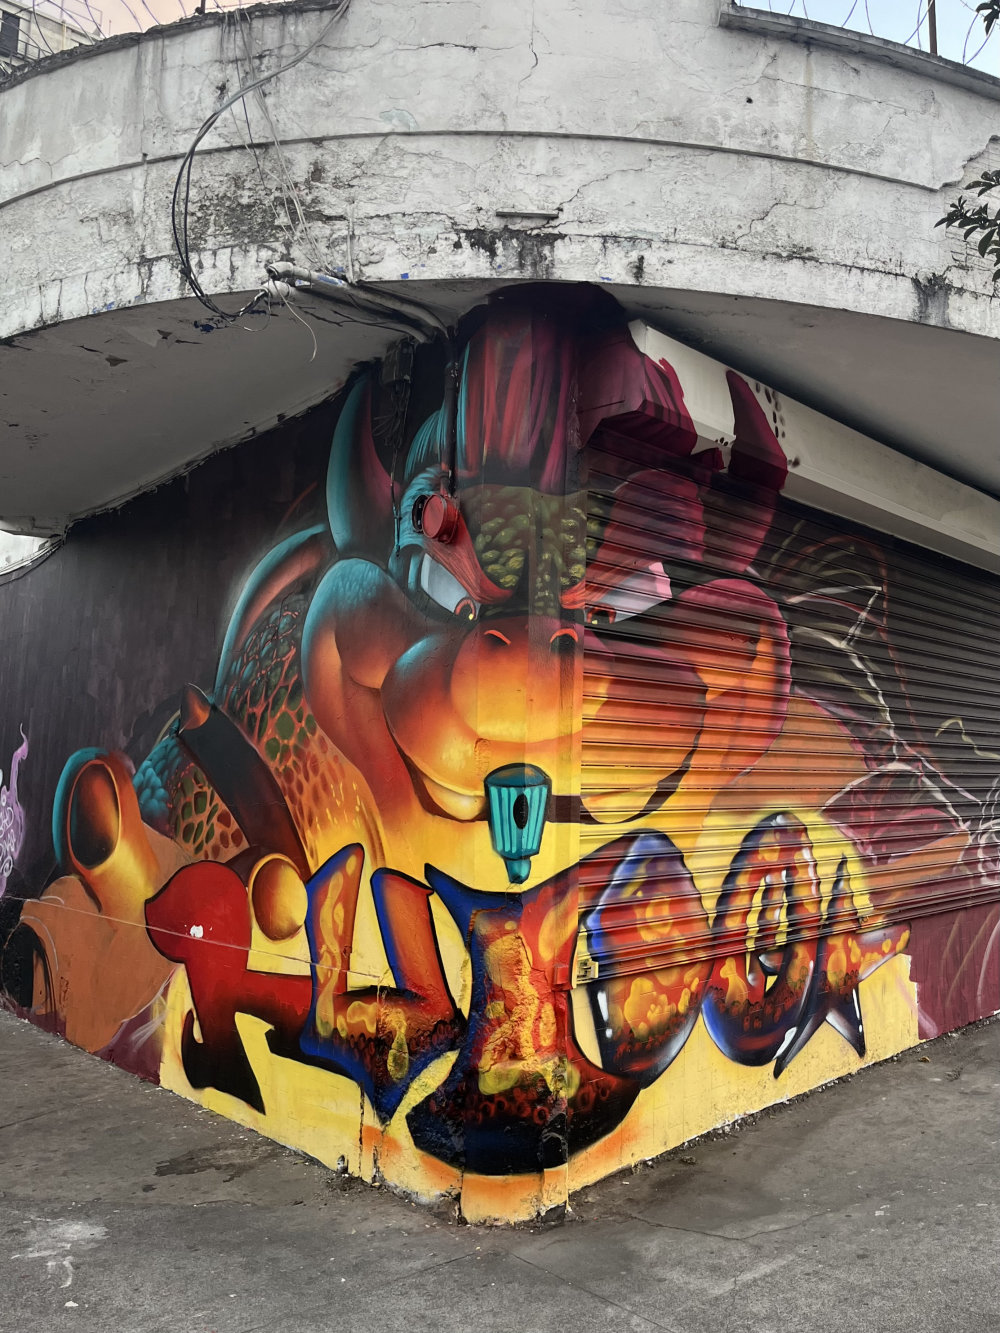 mural in Ciudad de Guatemala by artist Ruido.